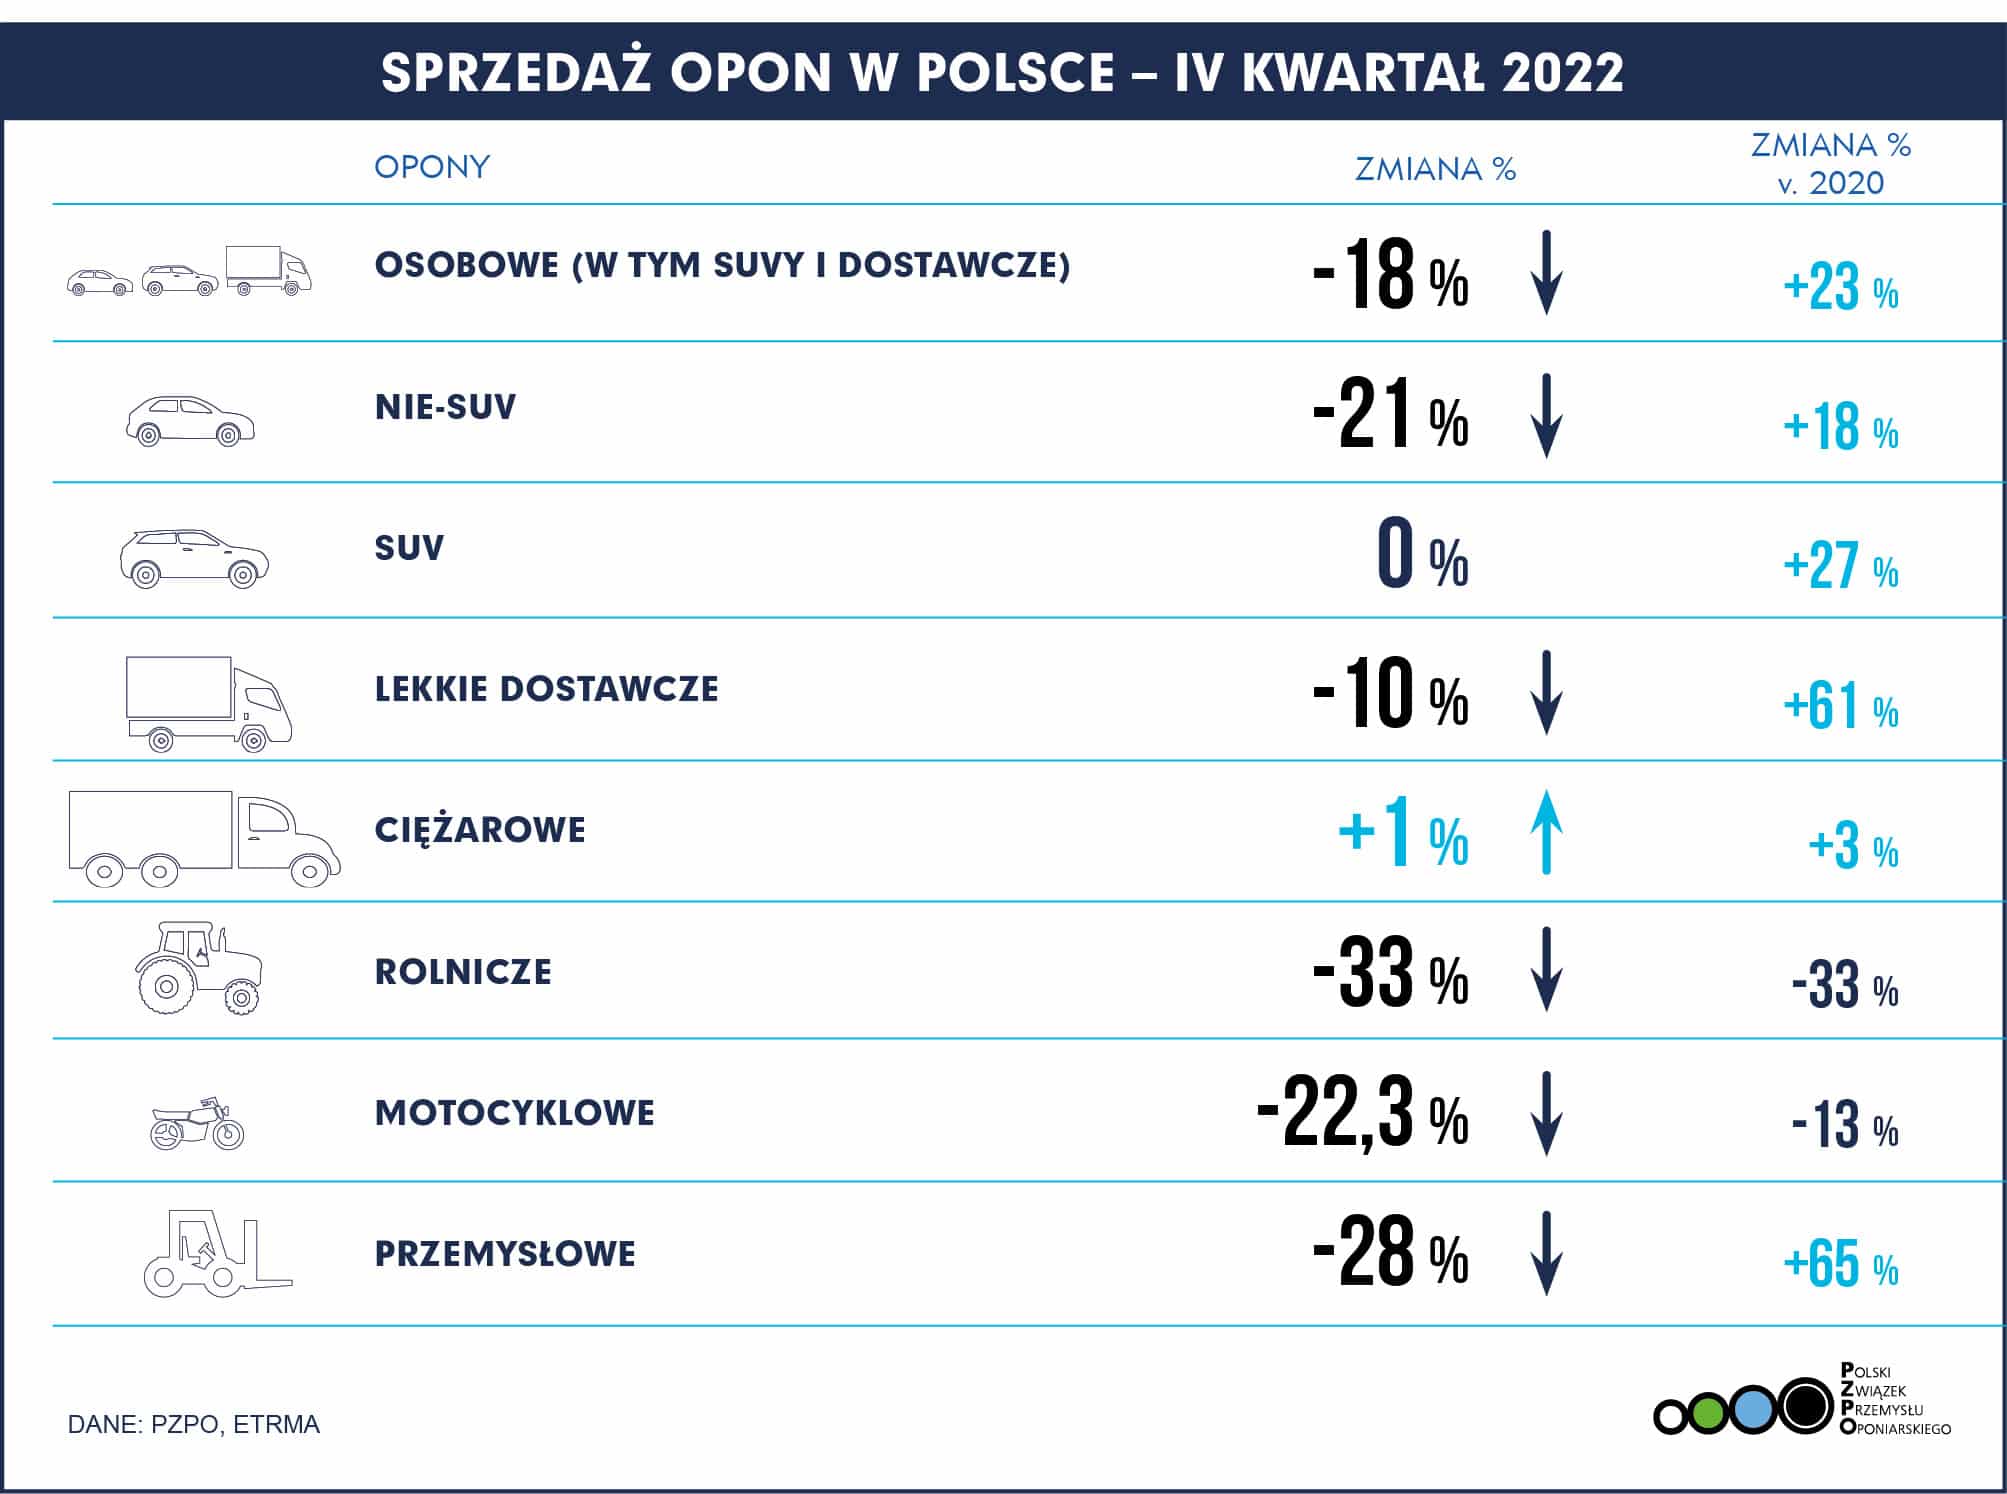 PL POLSKA Q4 2022